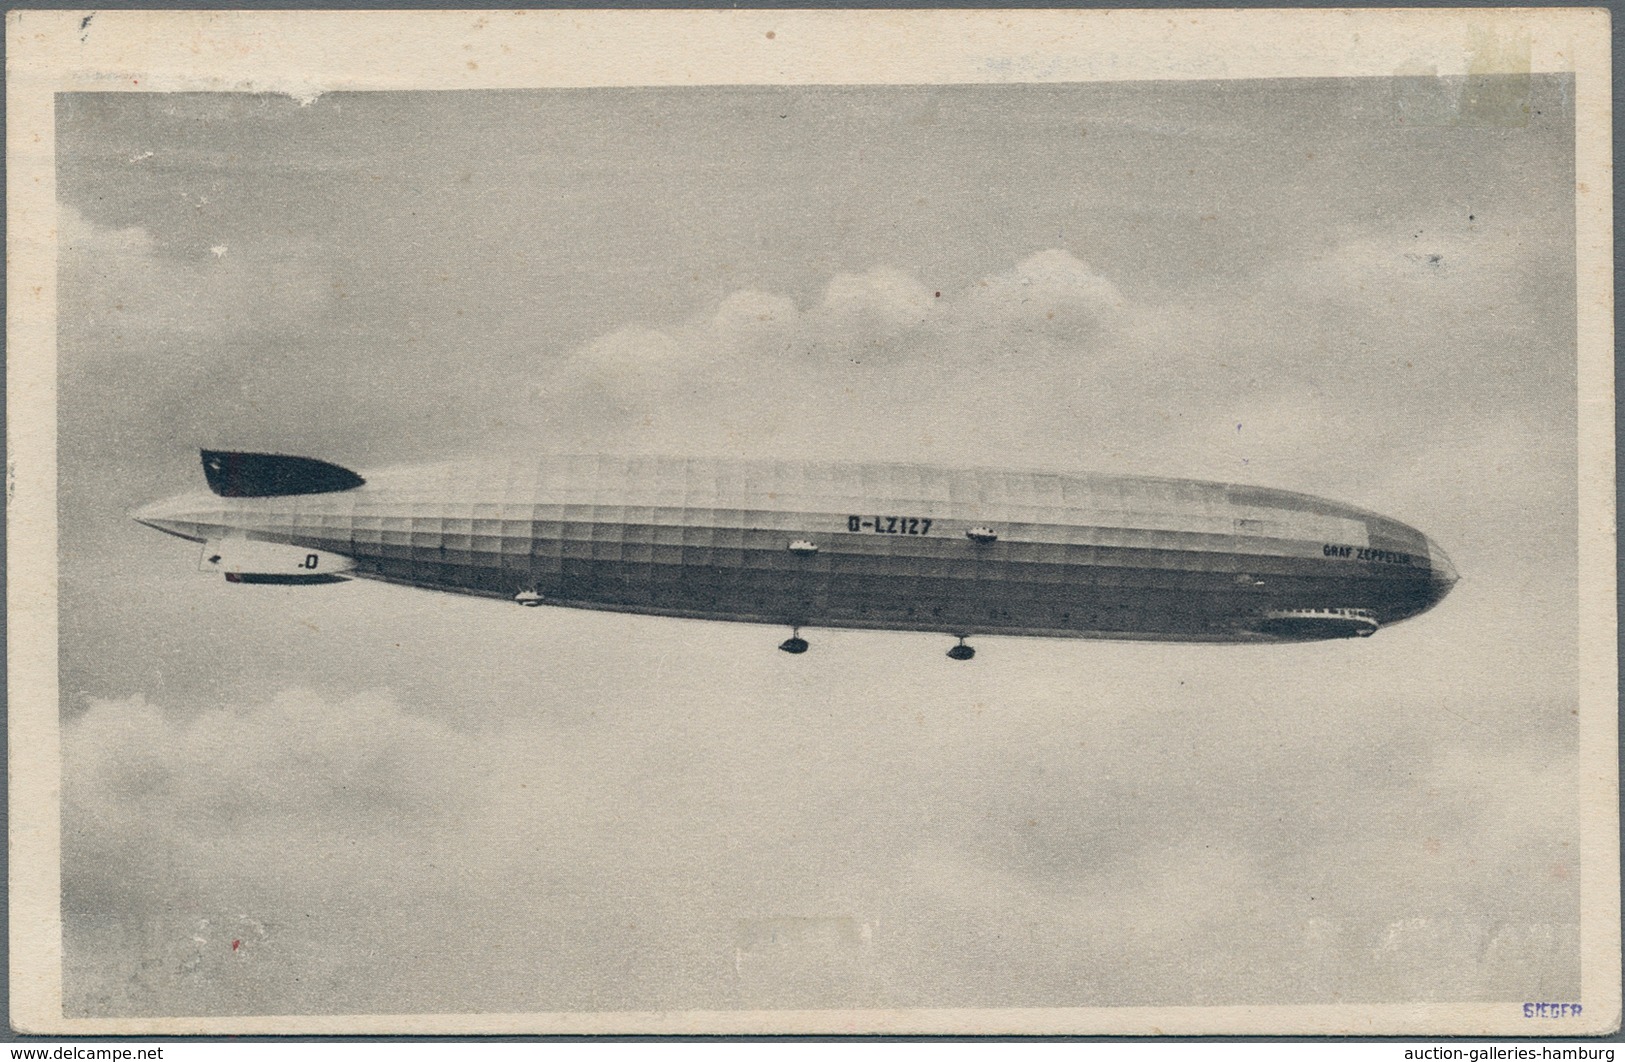 Zeppelinpost Europa: 1929, Österreichfahrt, Zeppelin-Vordruck-Ansichtskarte Des Sieger-Neuheiten-Die - Sonstige - Europa